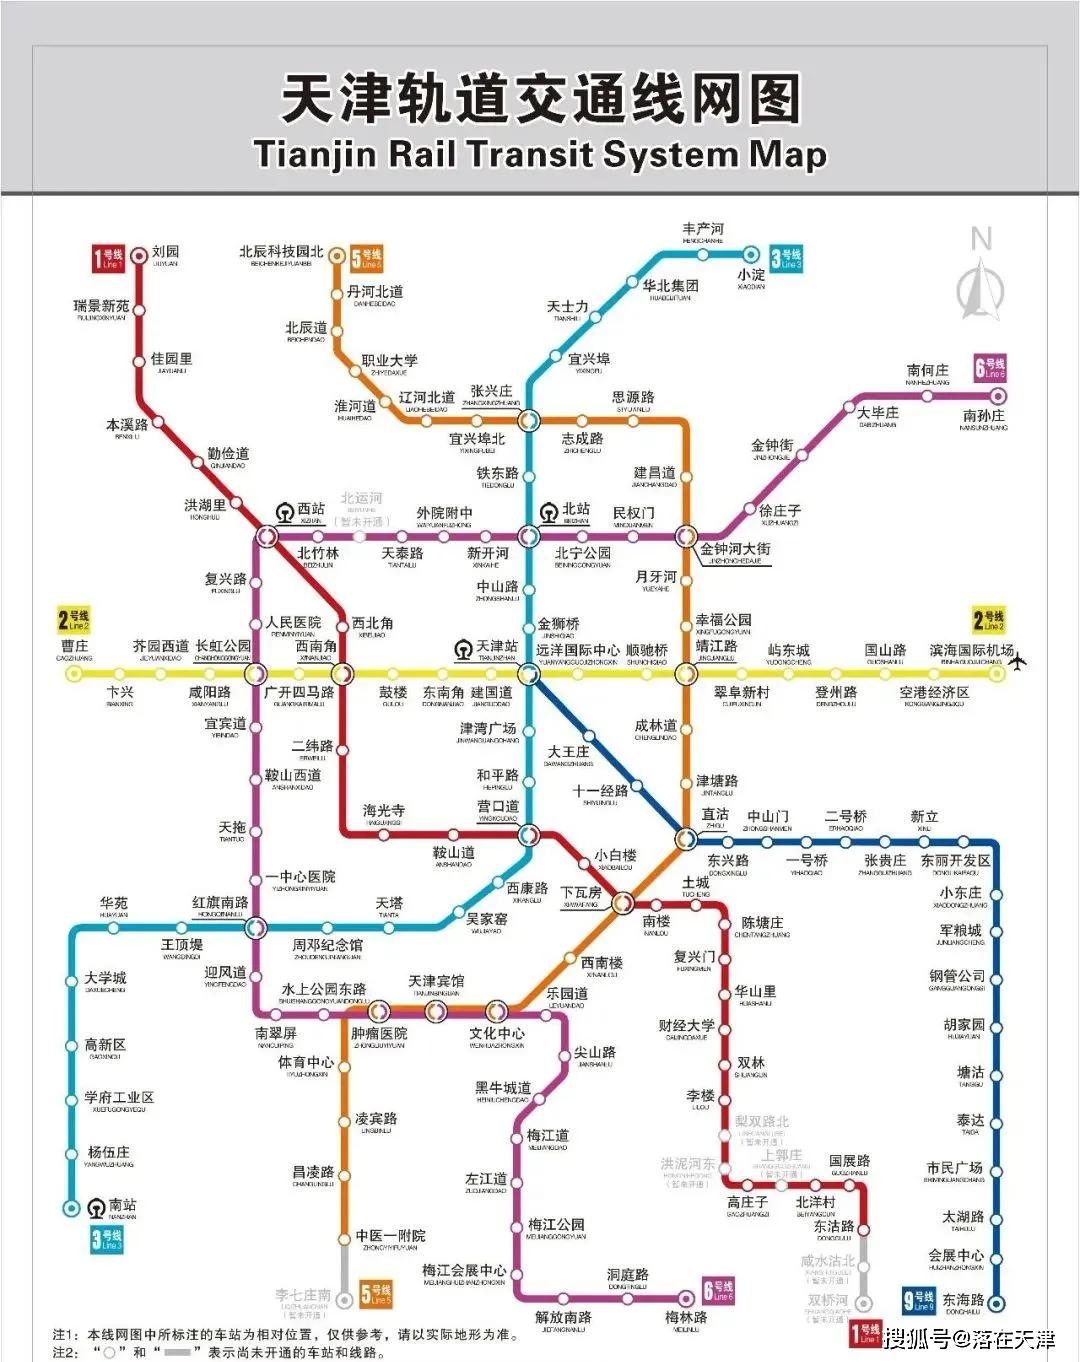 地铁11号线一期 目前,天津地铁11号线一期工程ppp项目各站点已通过